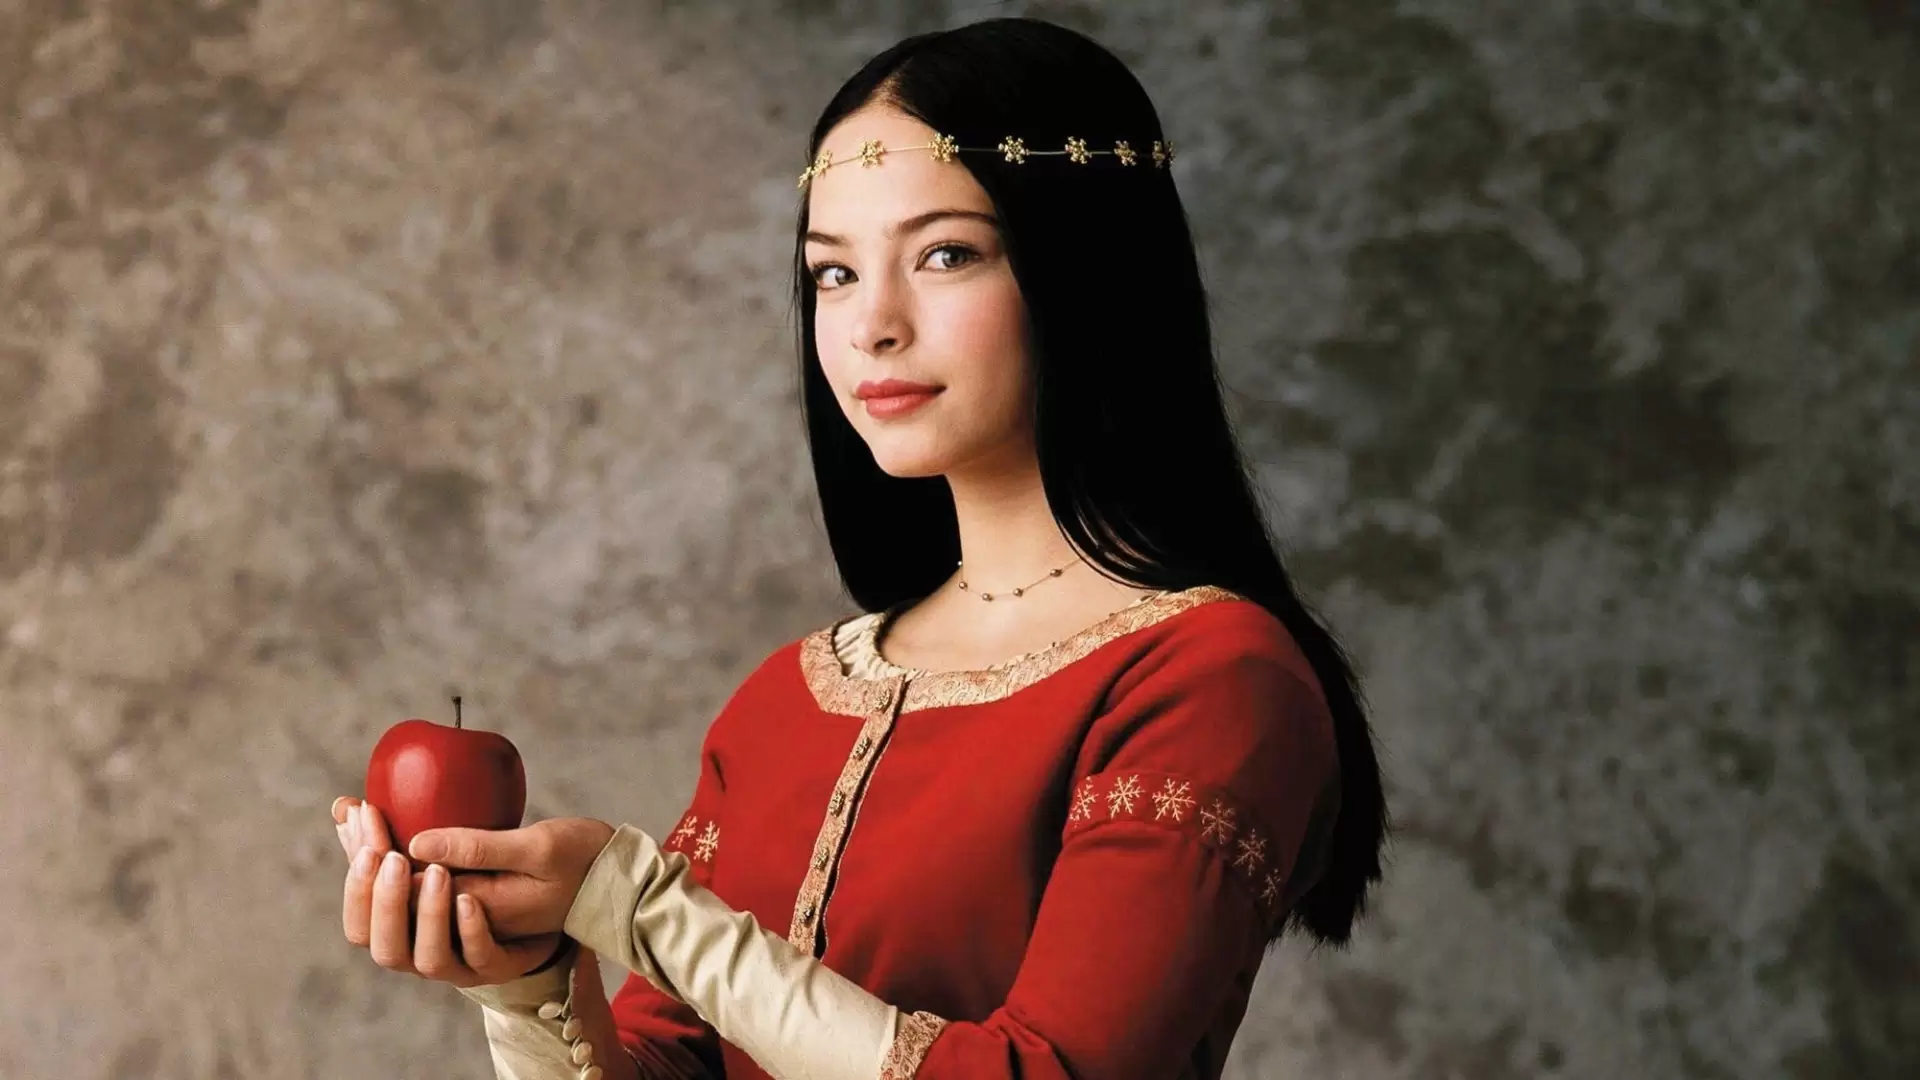 دانلود فیلم Snow White: The Fairest of Them All 2001 (سفید برفی: زیباترین از همه)